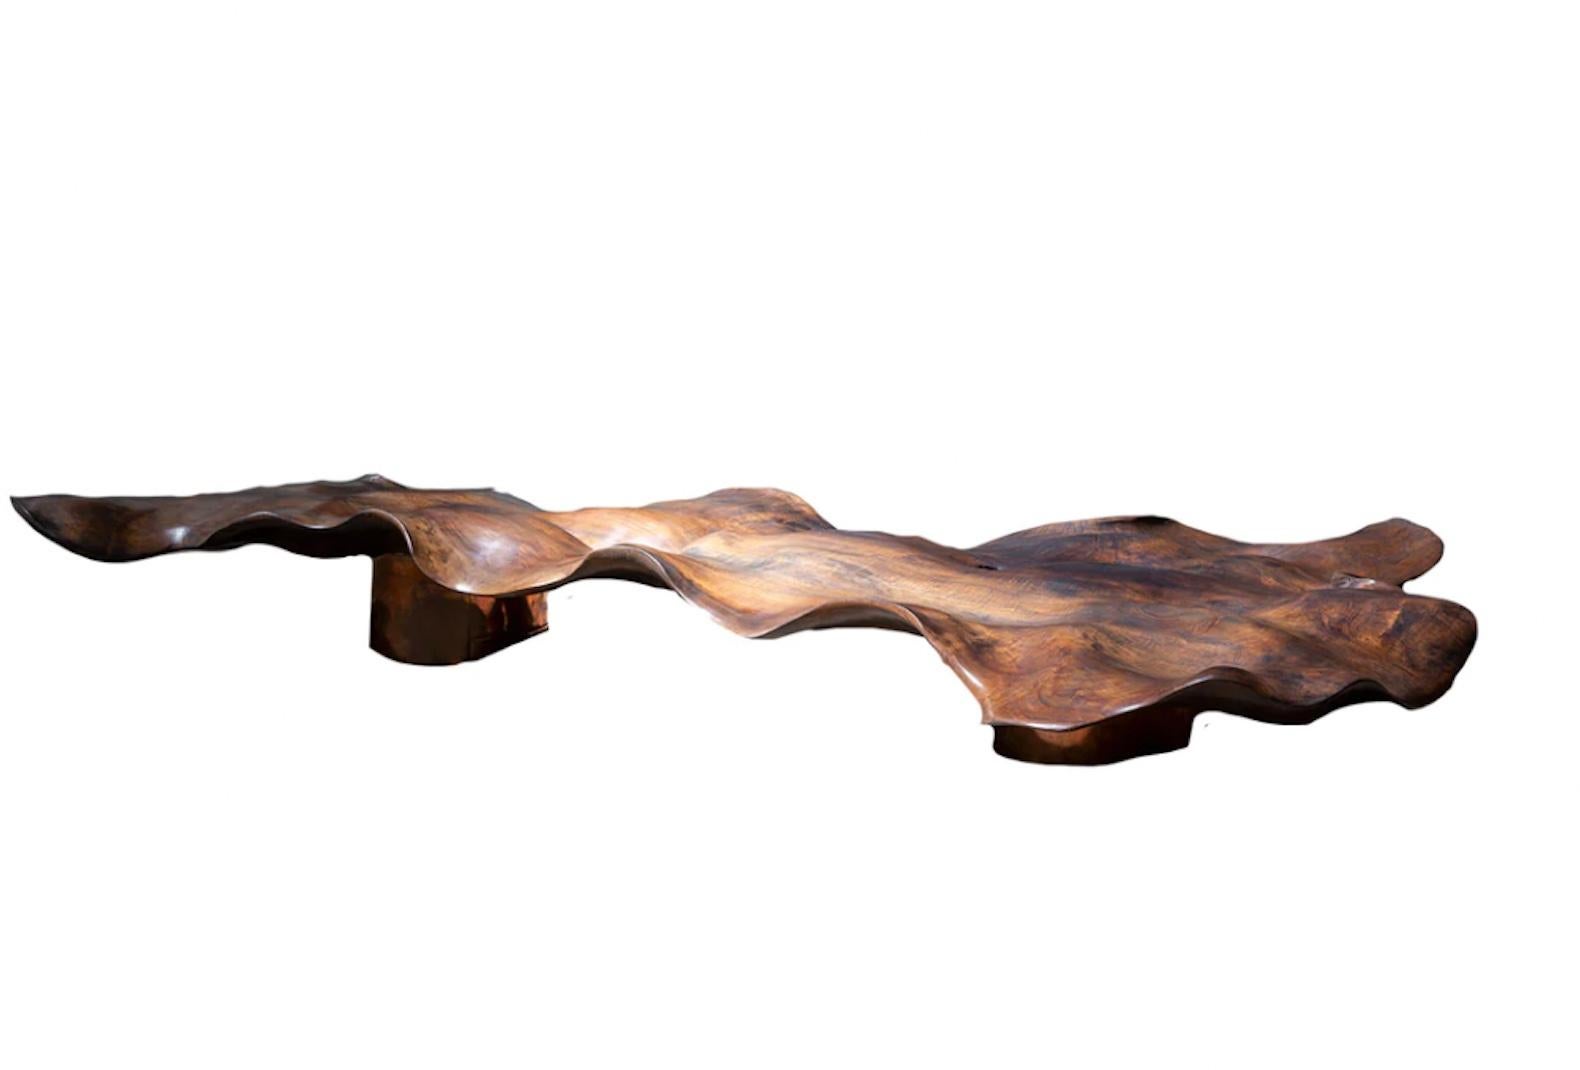 Wellen-Skulptur-Tisch von CEU

L 81,5